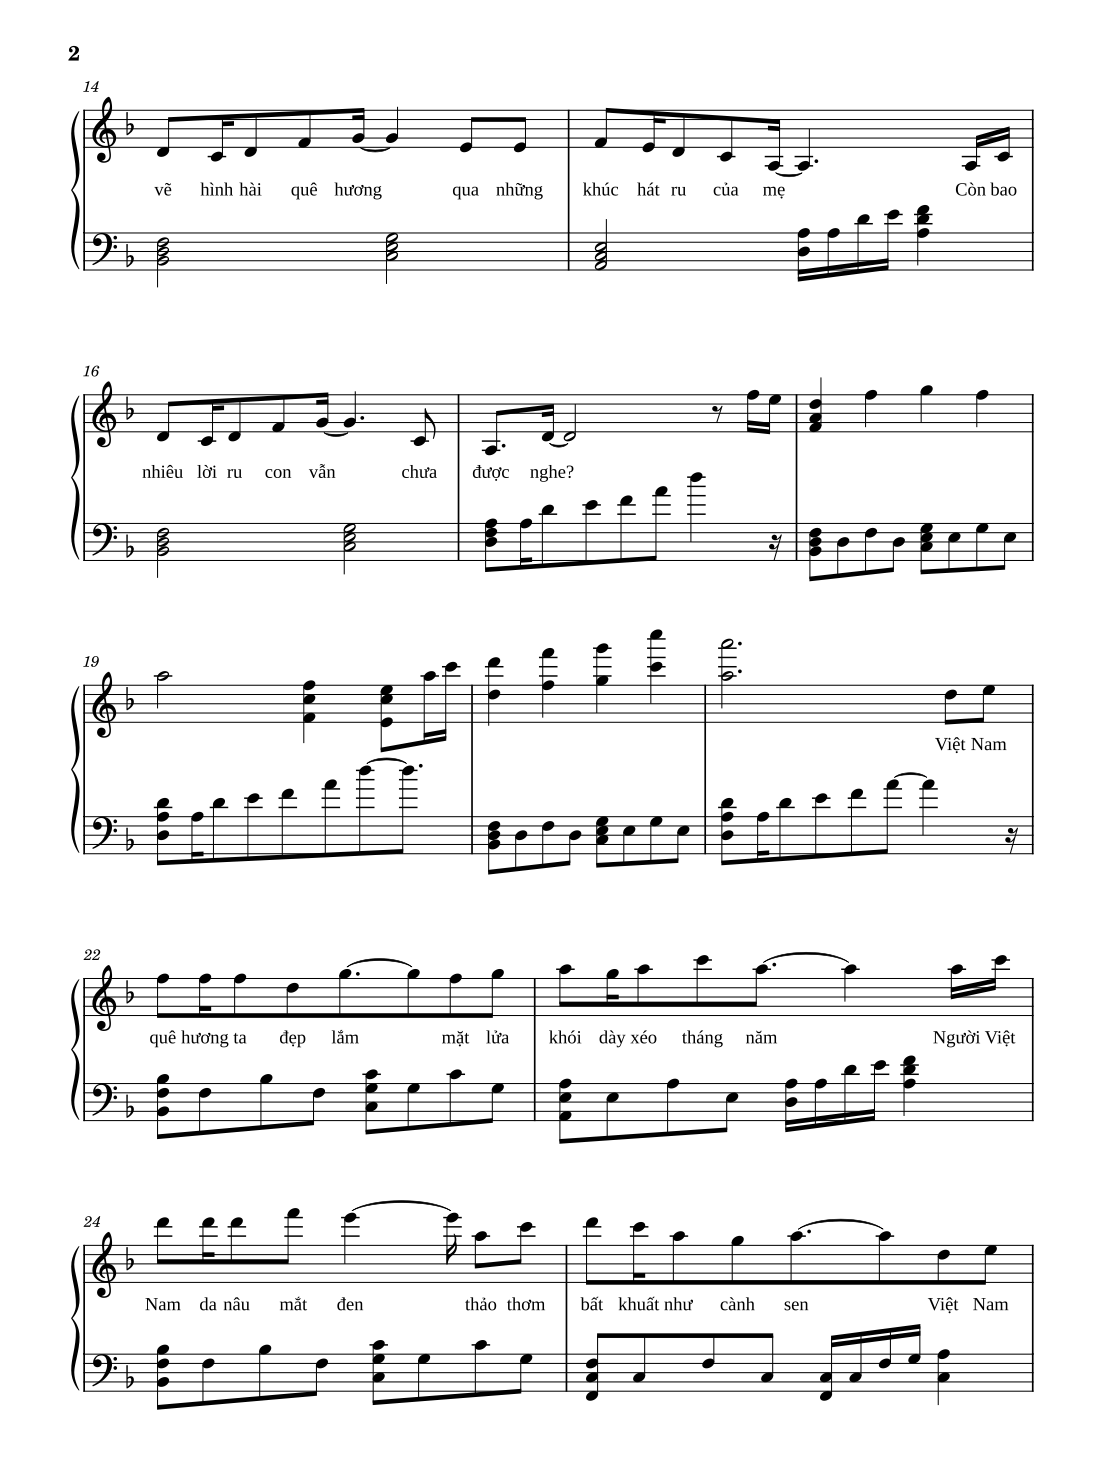 Sheet Piano Một Vòng Việt Nam - 2